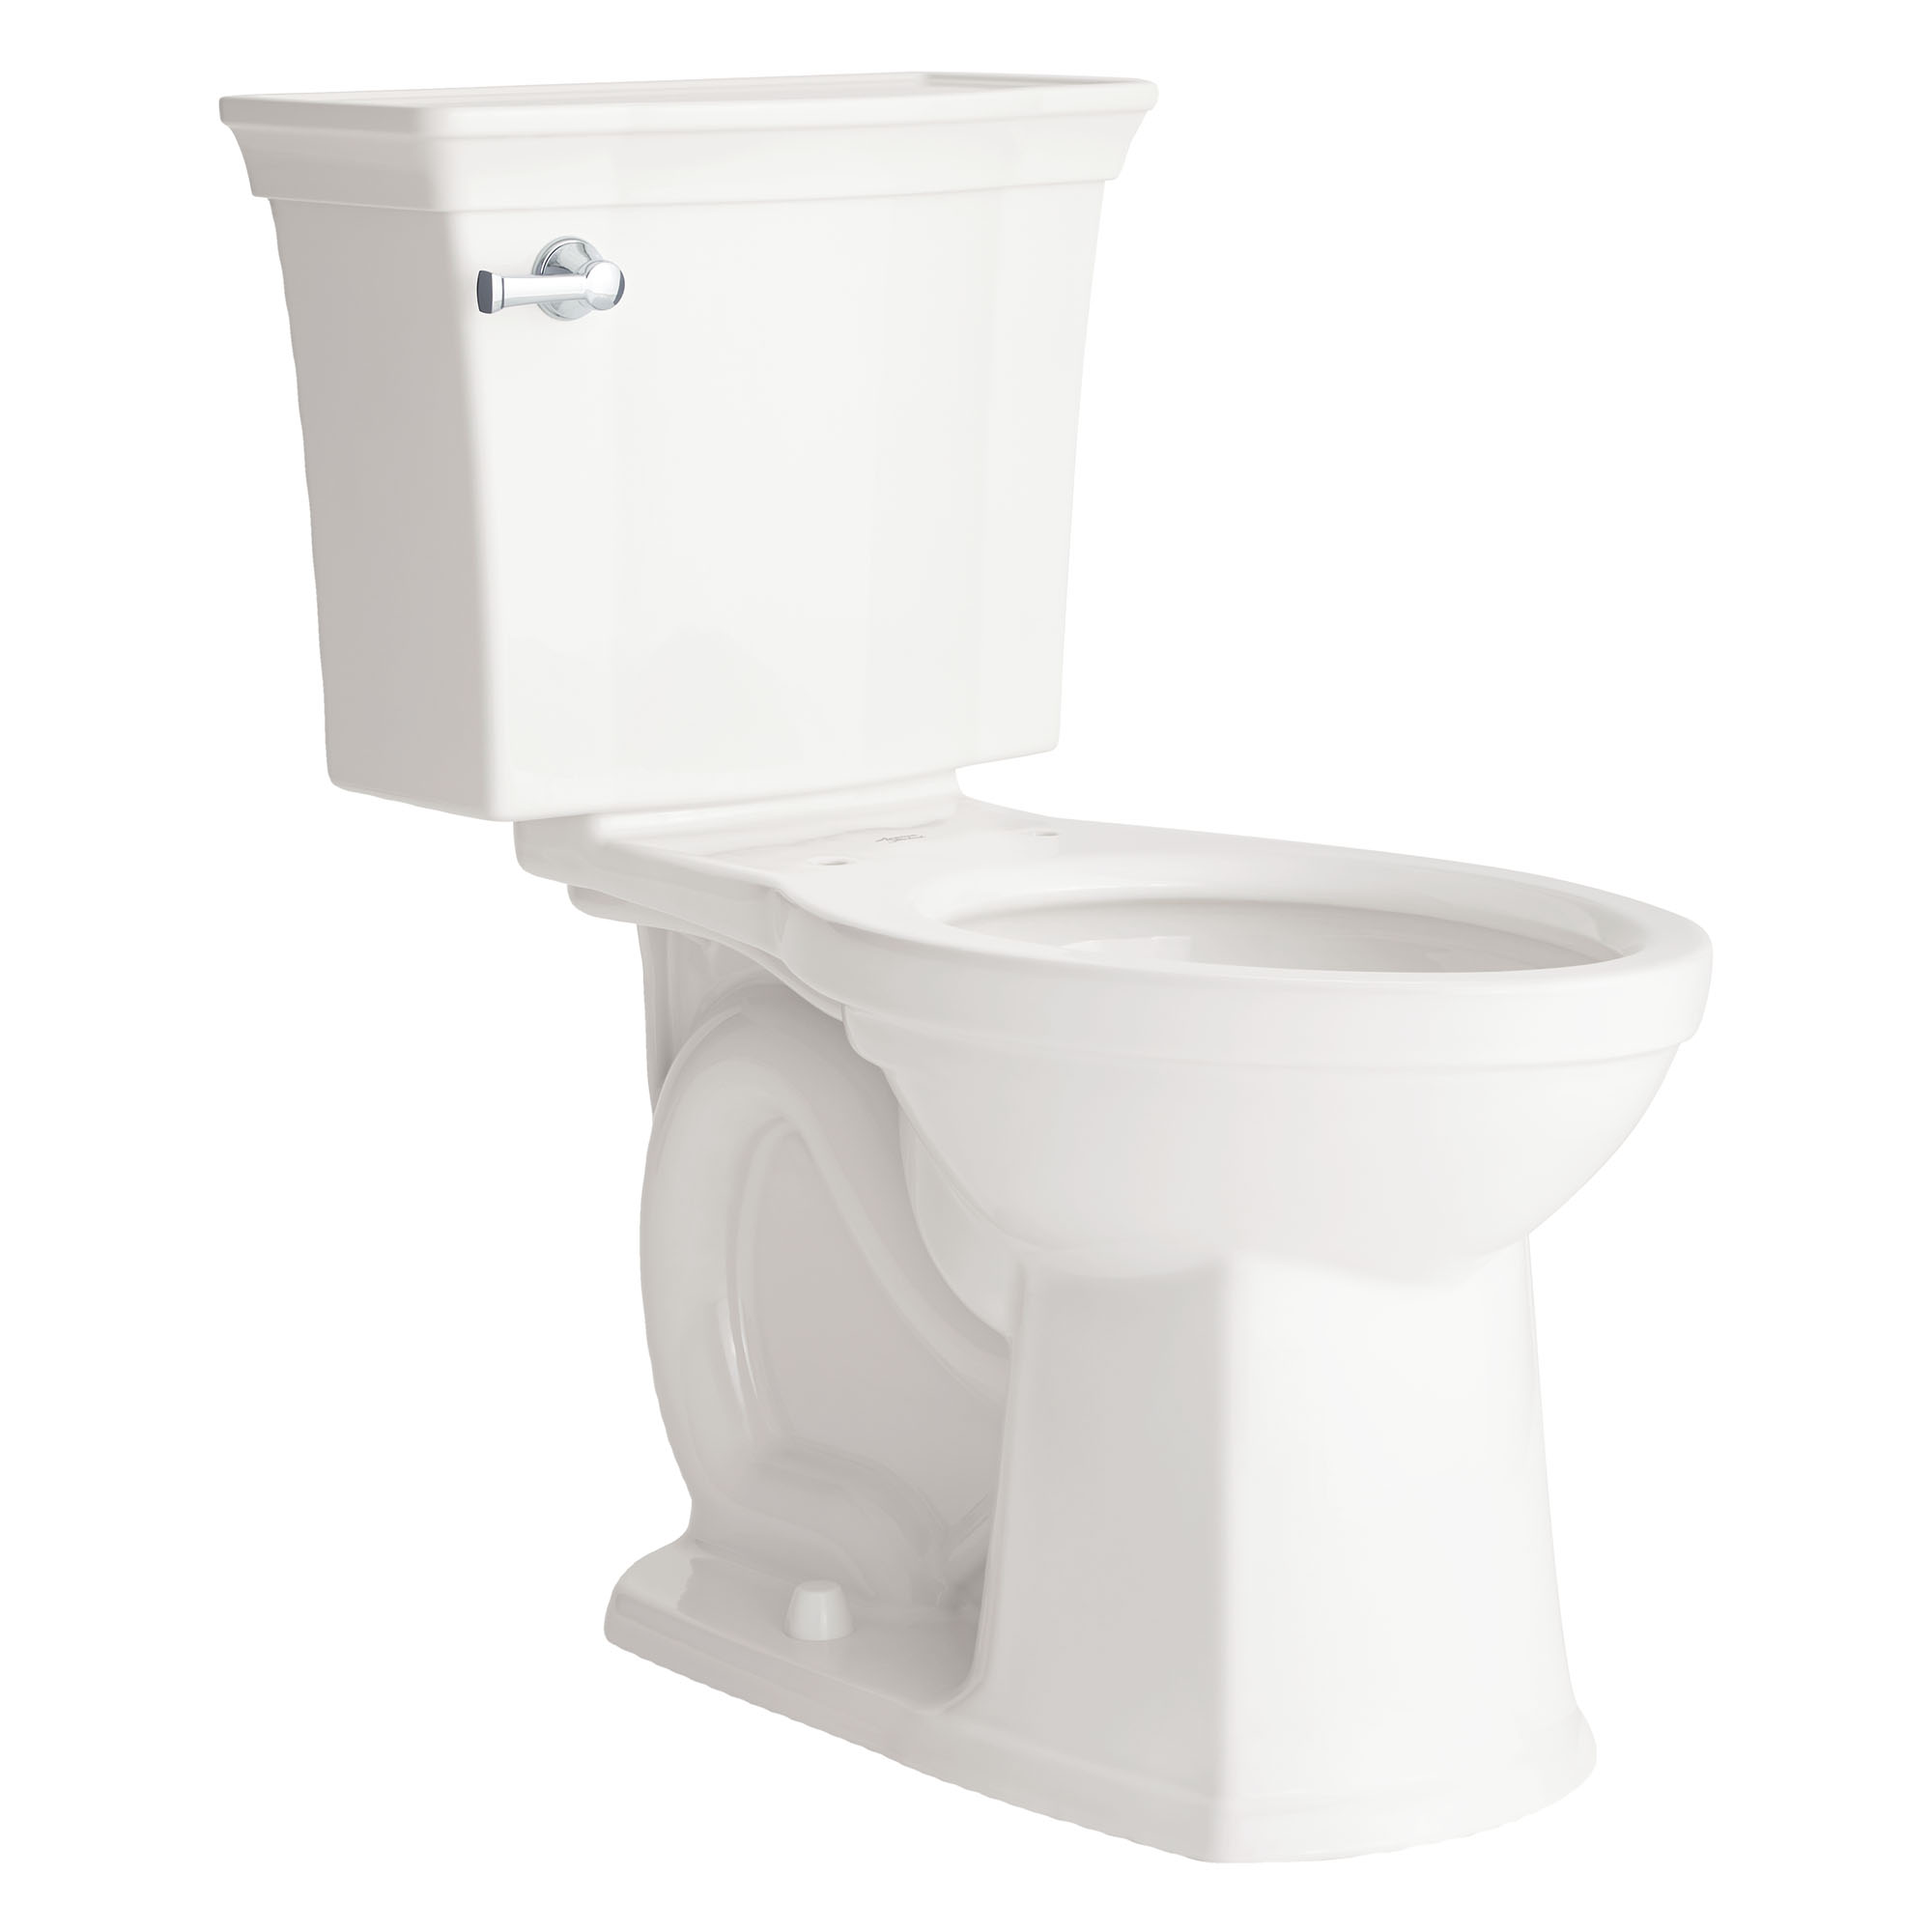 Toilette Estate VorMax, 2 pièces, 1,28 gpc/4,8 lpc, à cuvette allongée à hauteur de chaise, sans siège